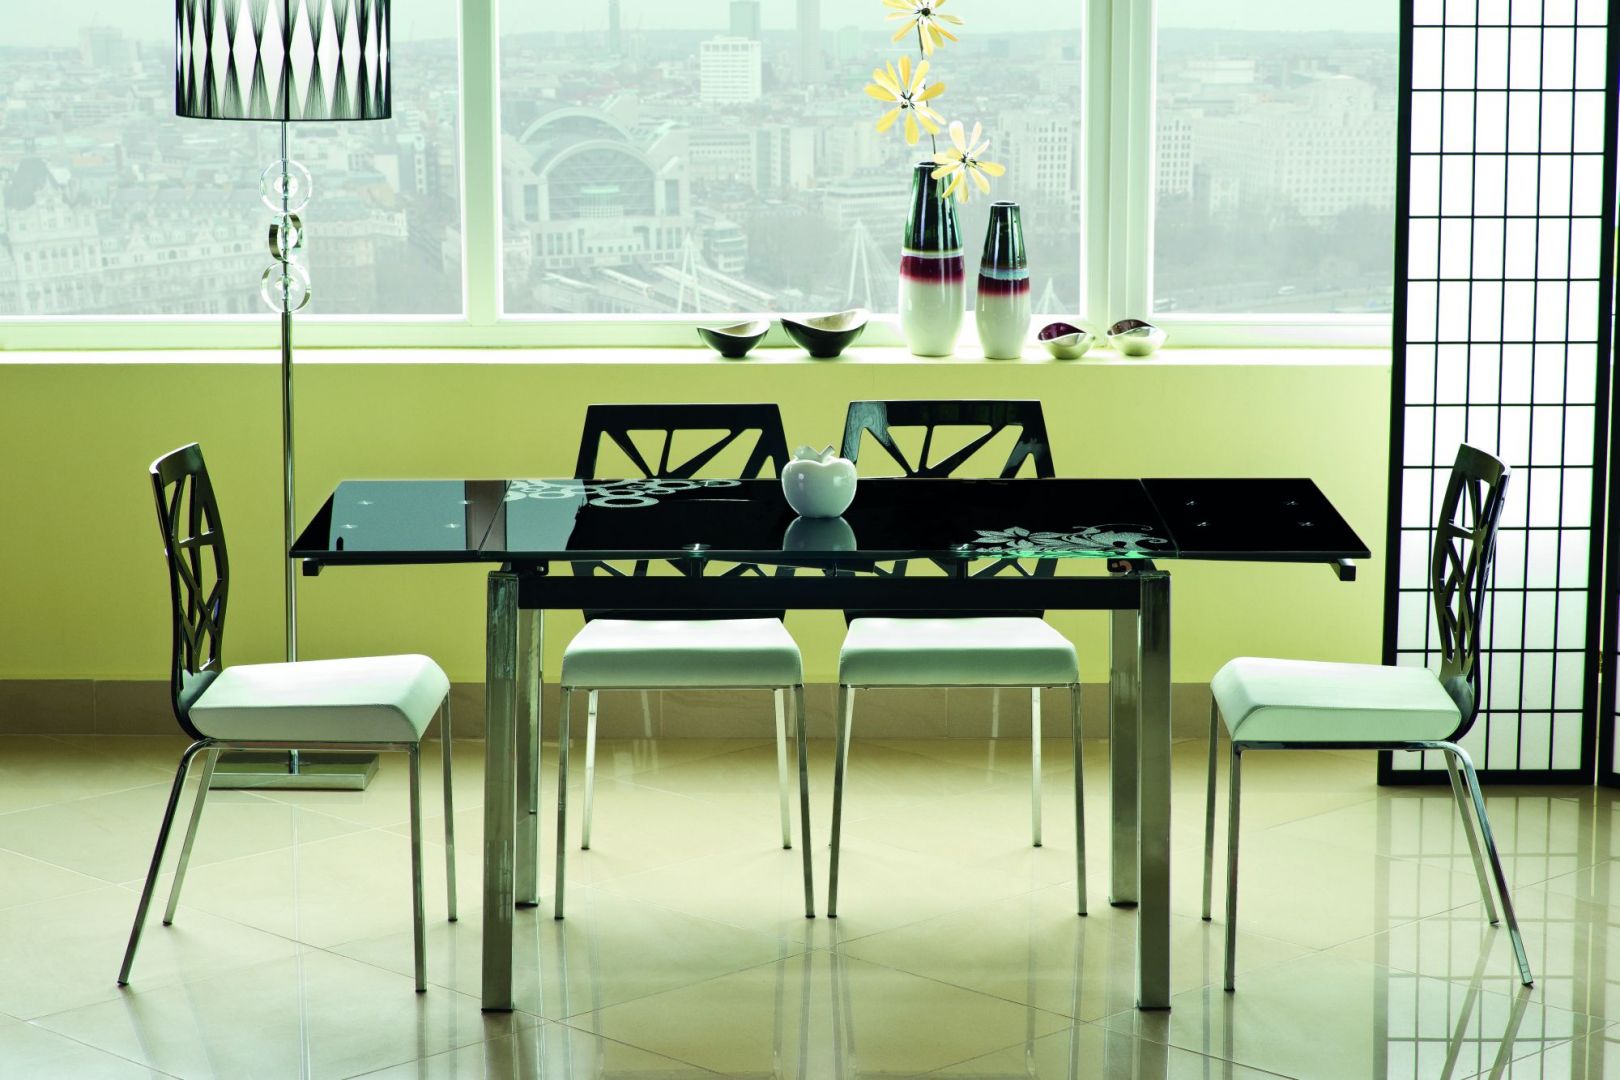 Rozkładany stół GD-017 z cienkim, szklanym blatem dostępny jest w kolorze: szarym, czarnym, czerwonym, beżowym i białym. Fot. Sigdal